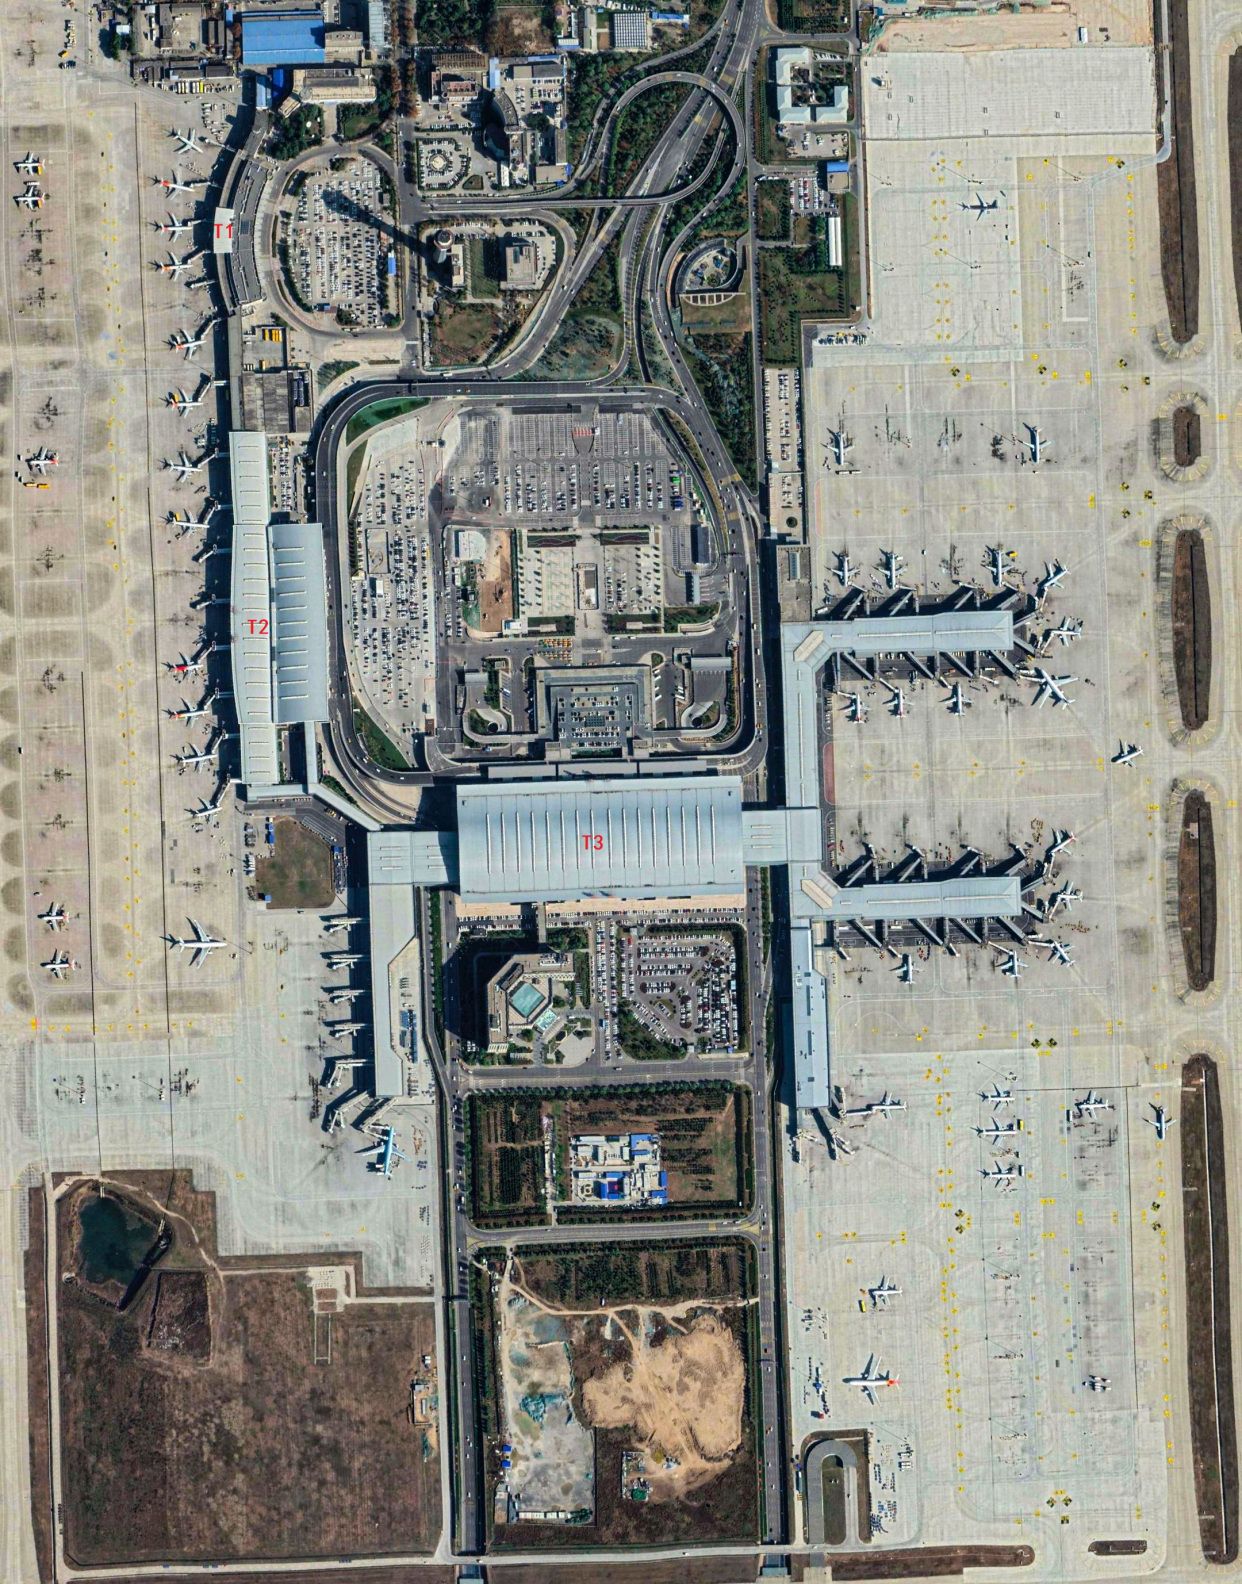 航拍西安咸阳国际机场,我国八大区域枢纽机场之一